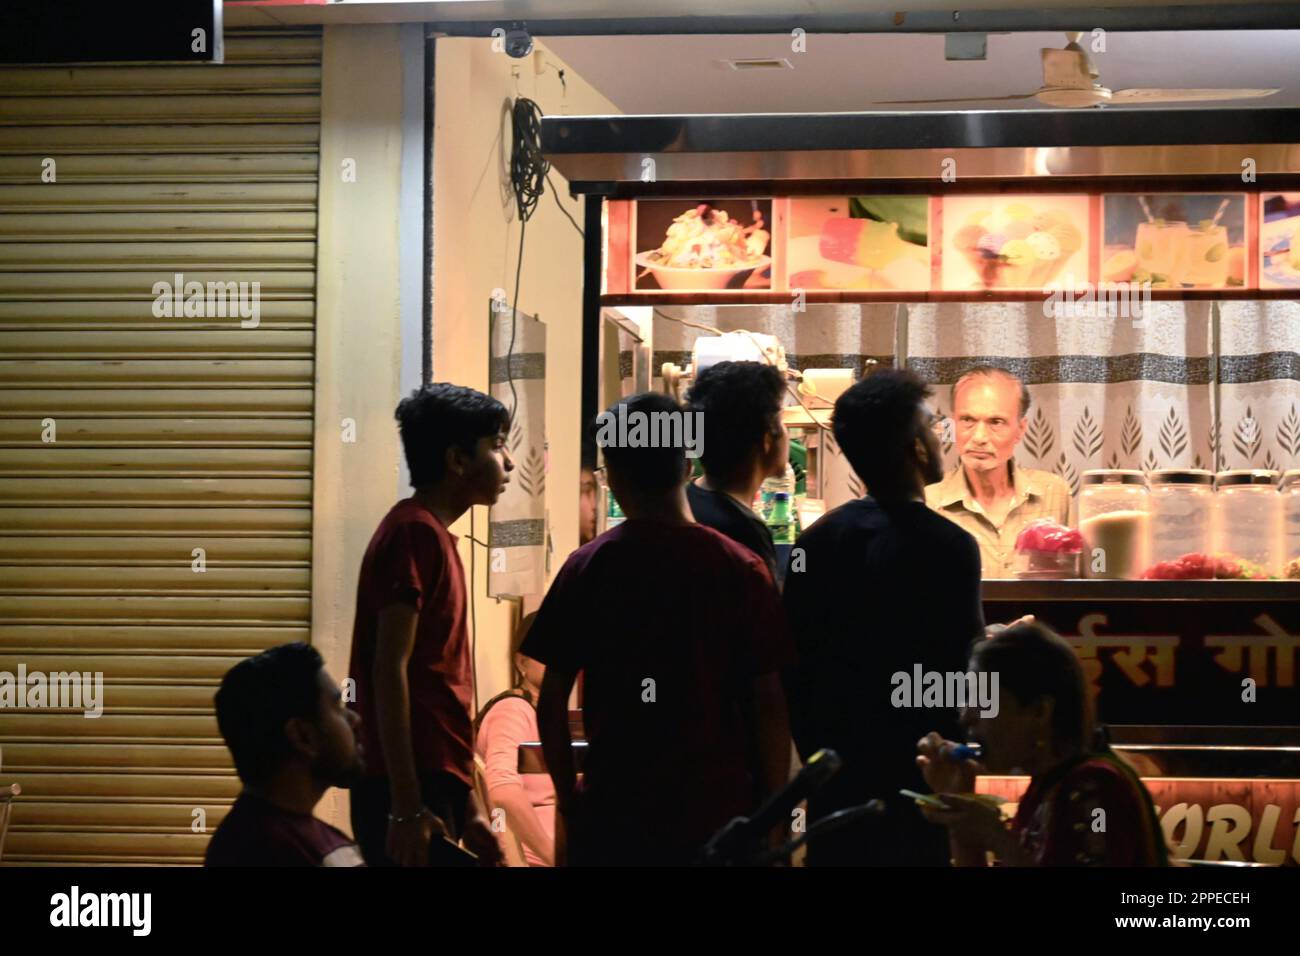 Città : nagpur; 23 Aprile 2023 Descrizione : ragazzi in piedi di fronte ad uno stallo gelato soda in estate ardente Foto Stock